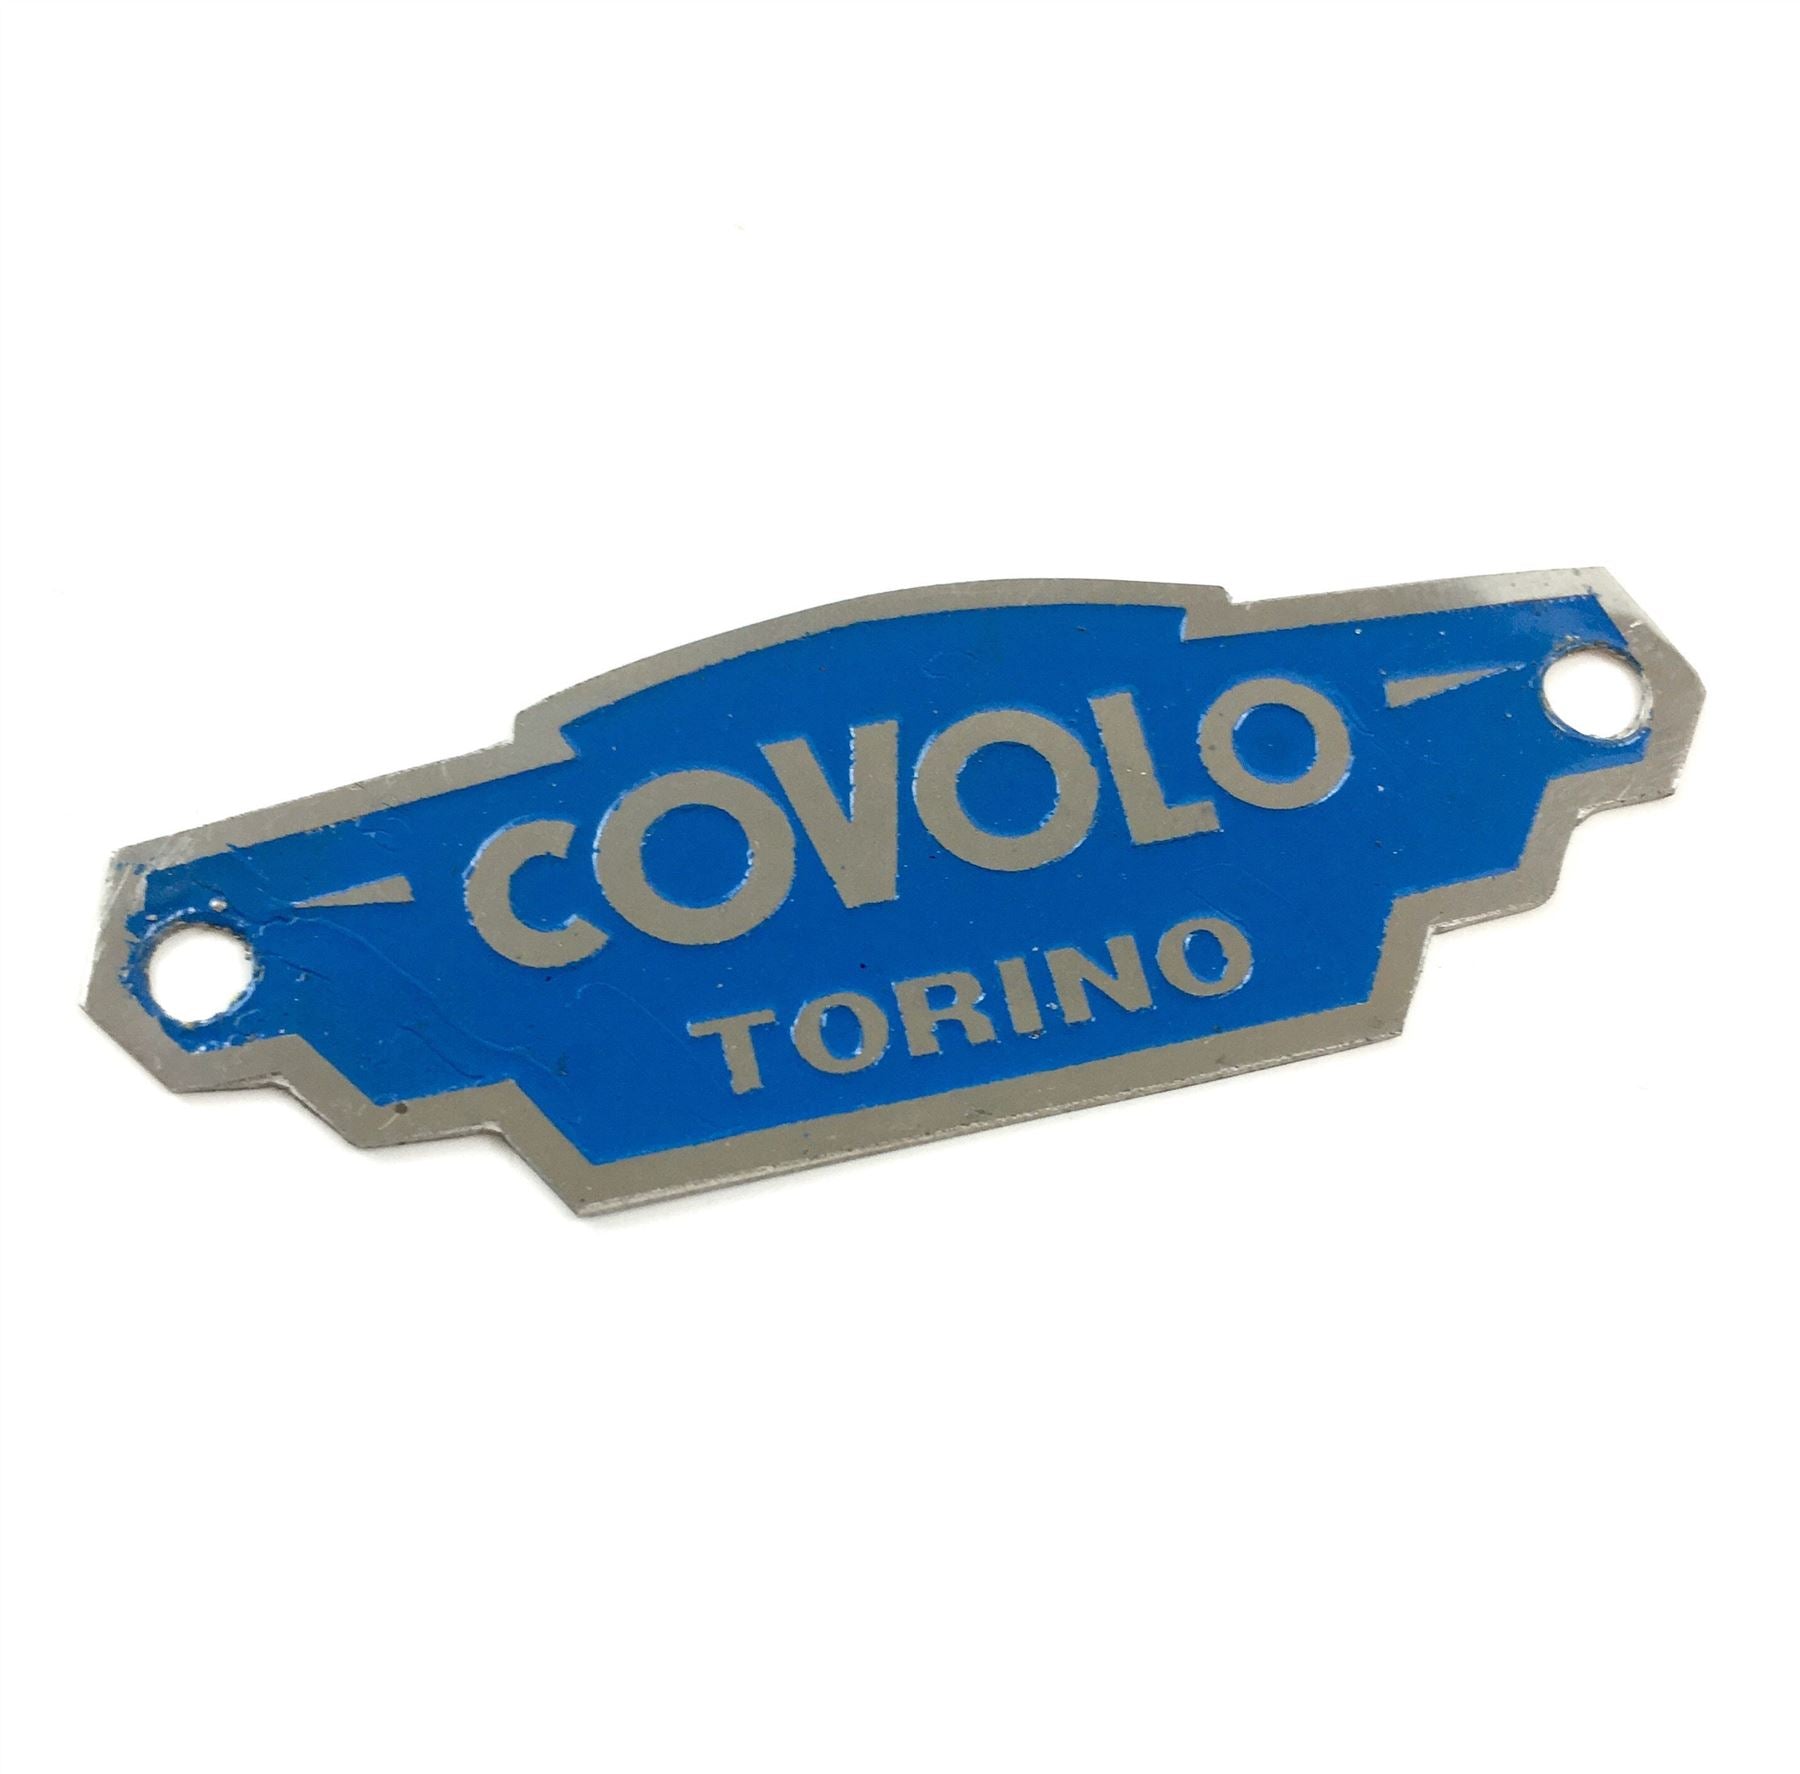 Lambretta Seat Badge Plaque - Covolo - Blue